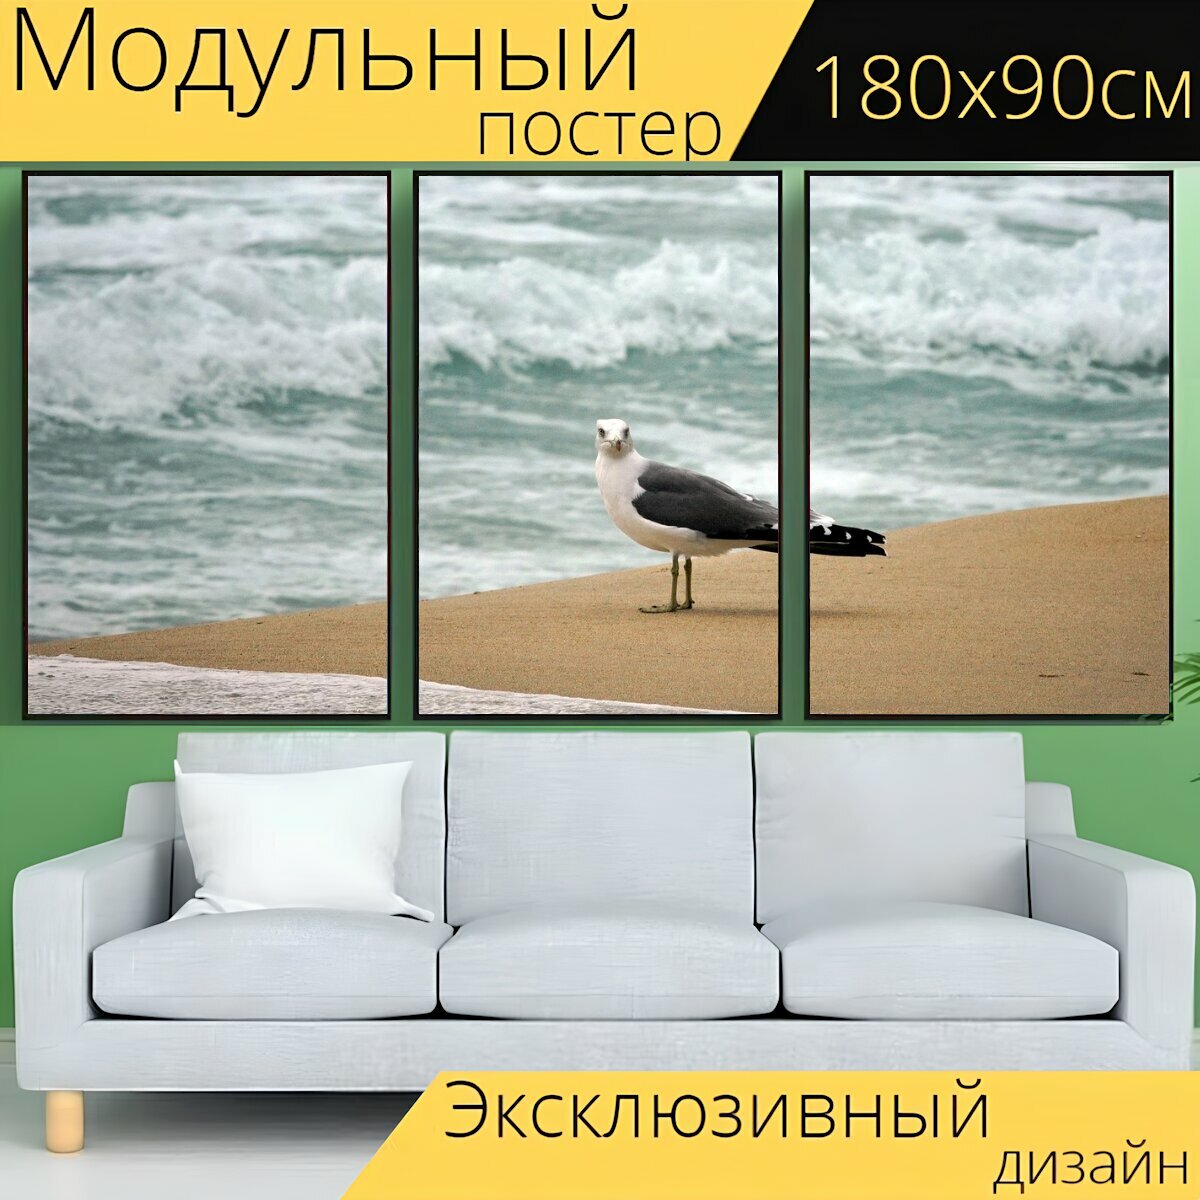 Модульный постер "Чайка, море, природа" 180 x 90 см. для интерьера